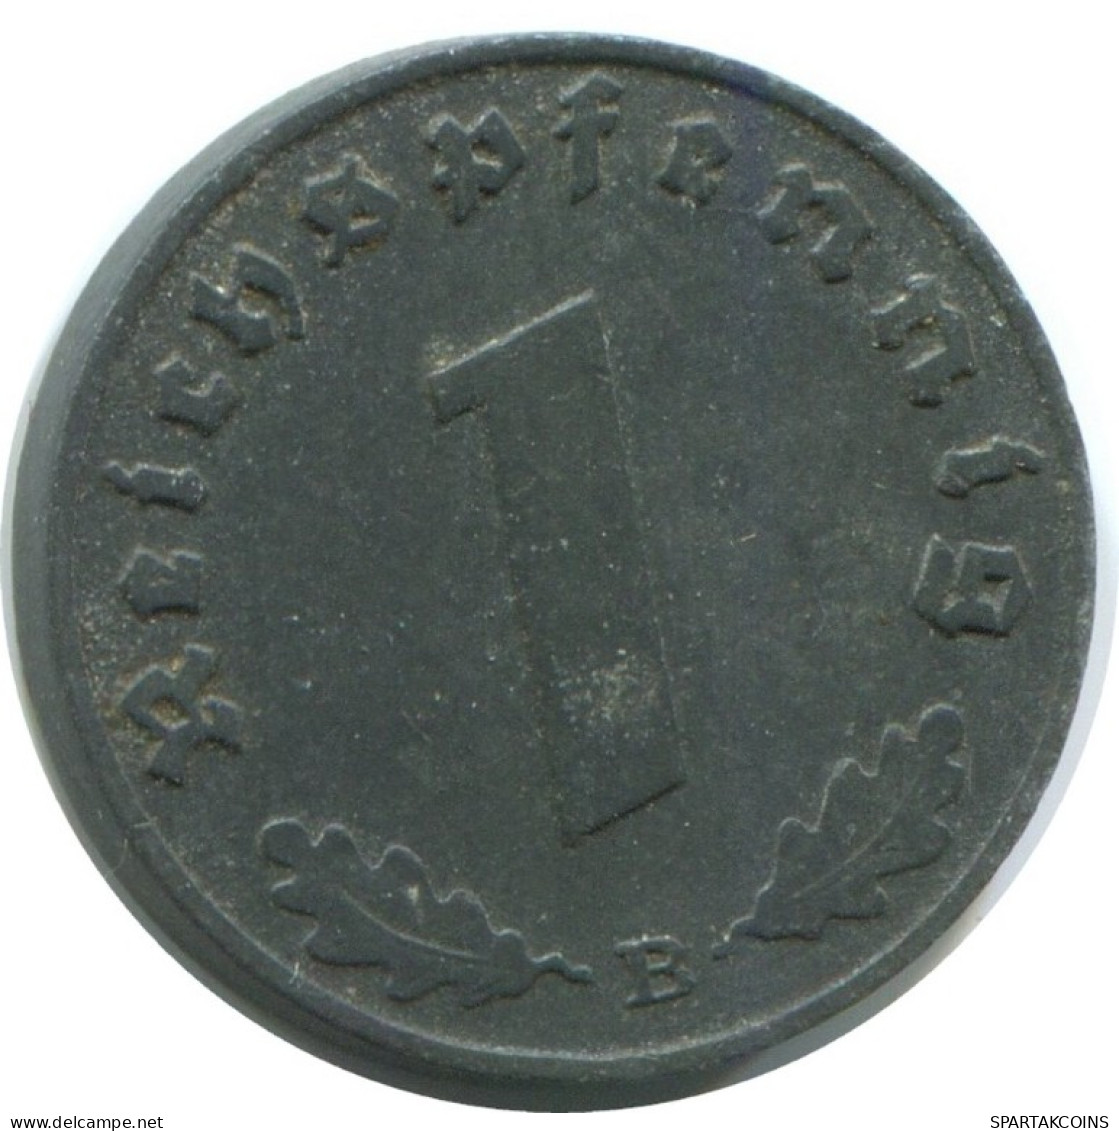 1 REICHSPFENNIG 1942 B ALLEMAGNE Pièce GERMANY #AE261.F.A - 1 Reichspfennig